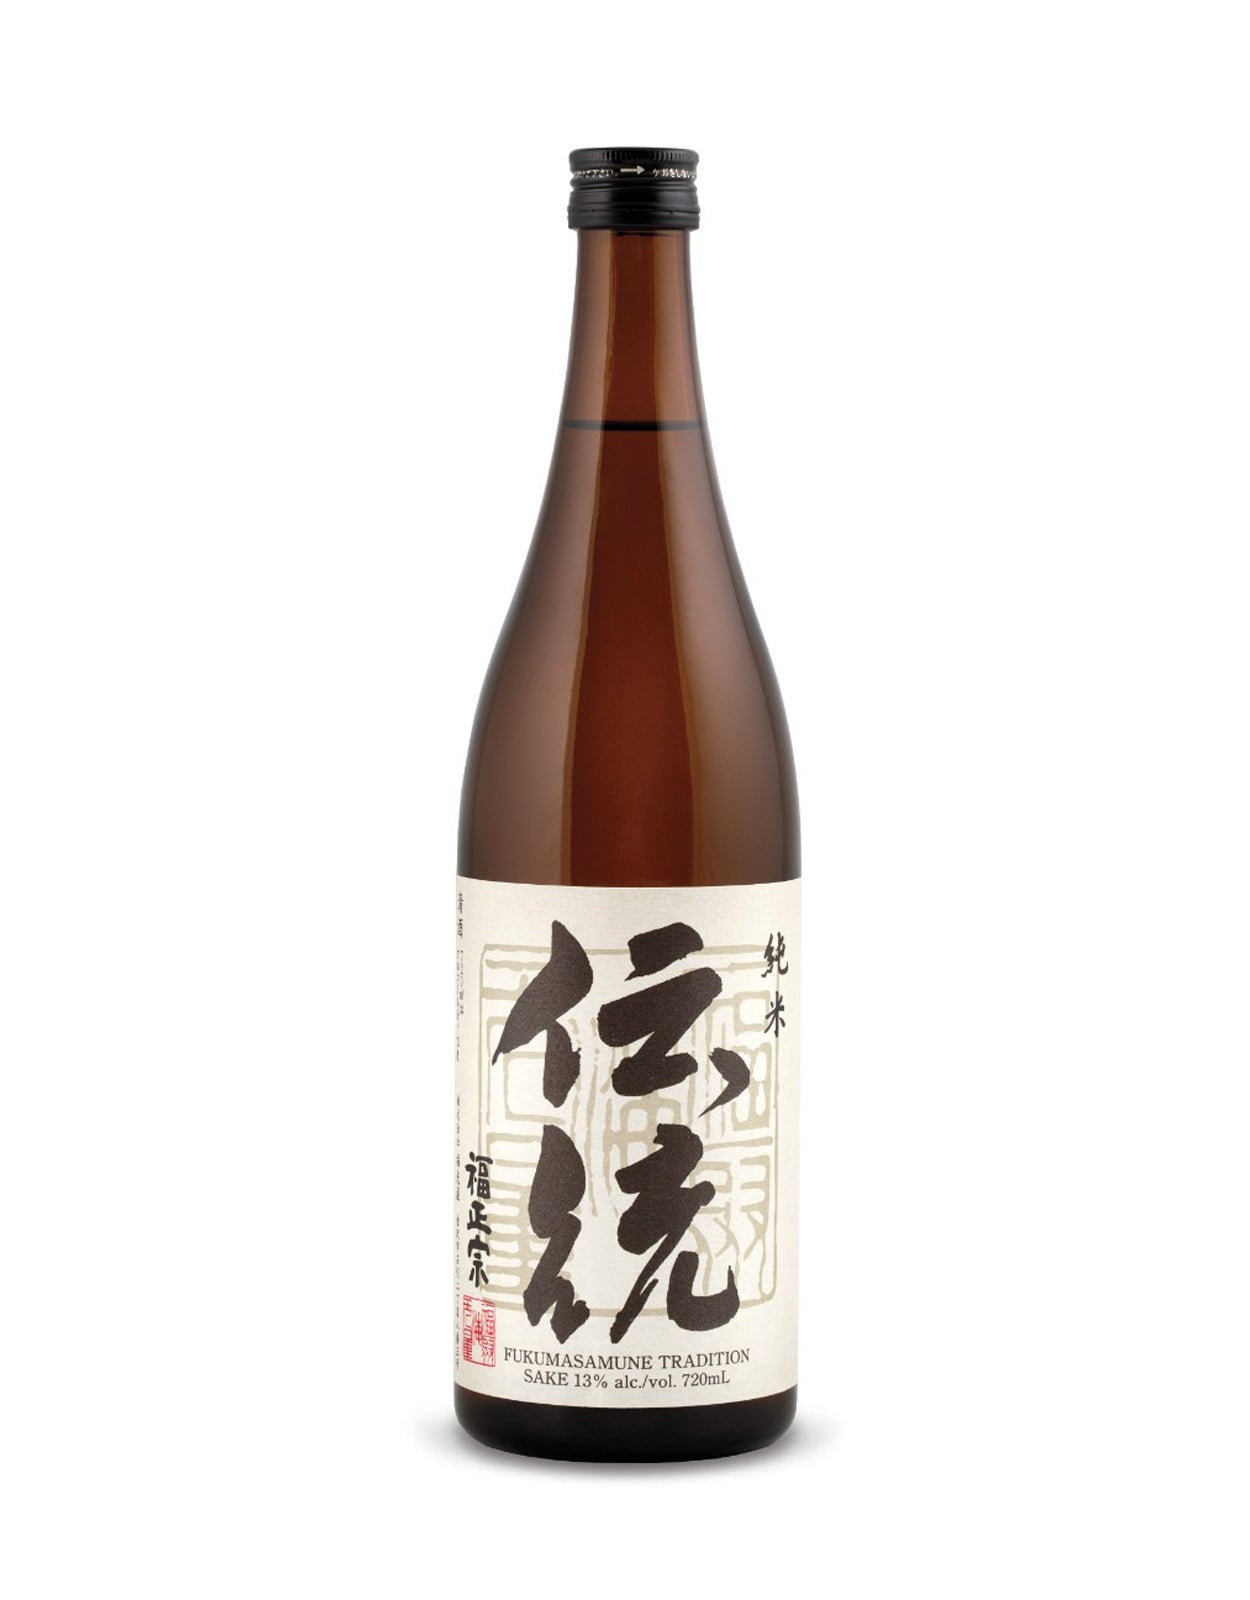 Fukumitsuya 'Tradition' Junmai Sake - 720 ml